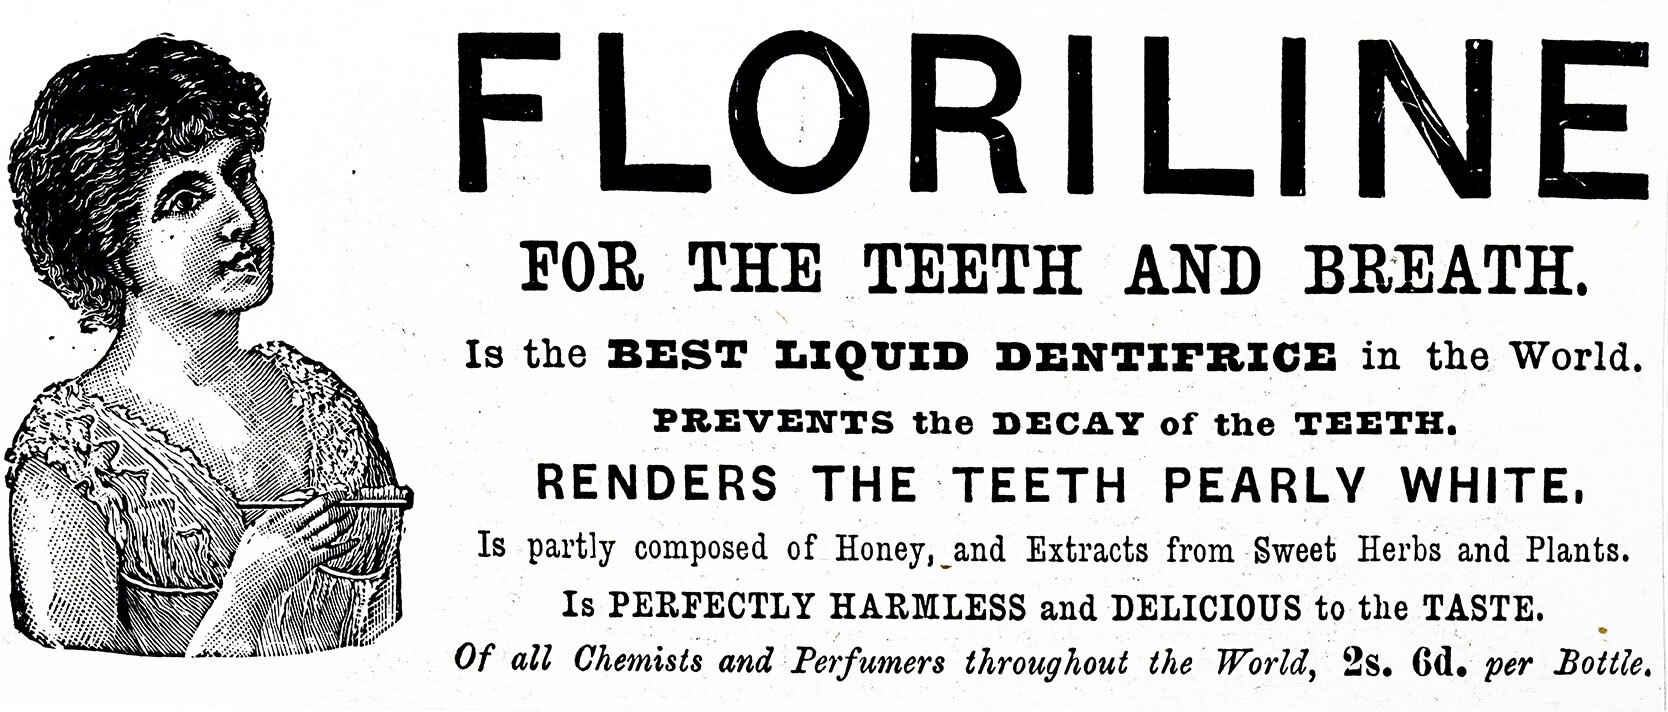 assertion propaganda floriline for teeth